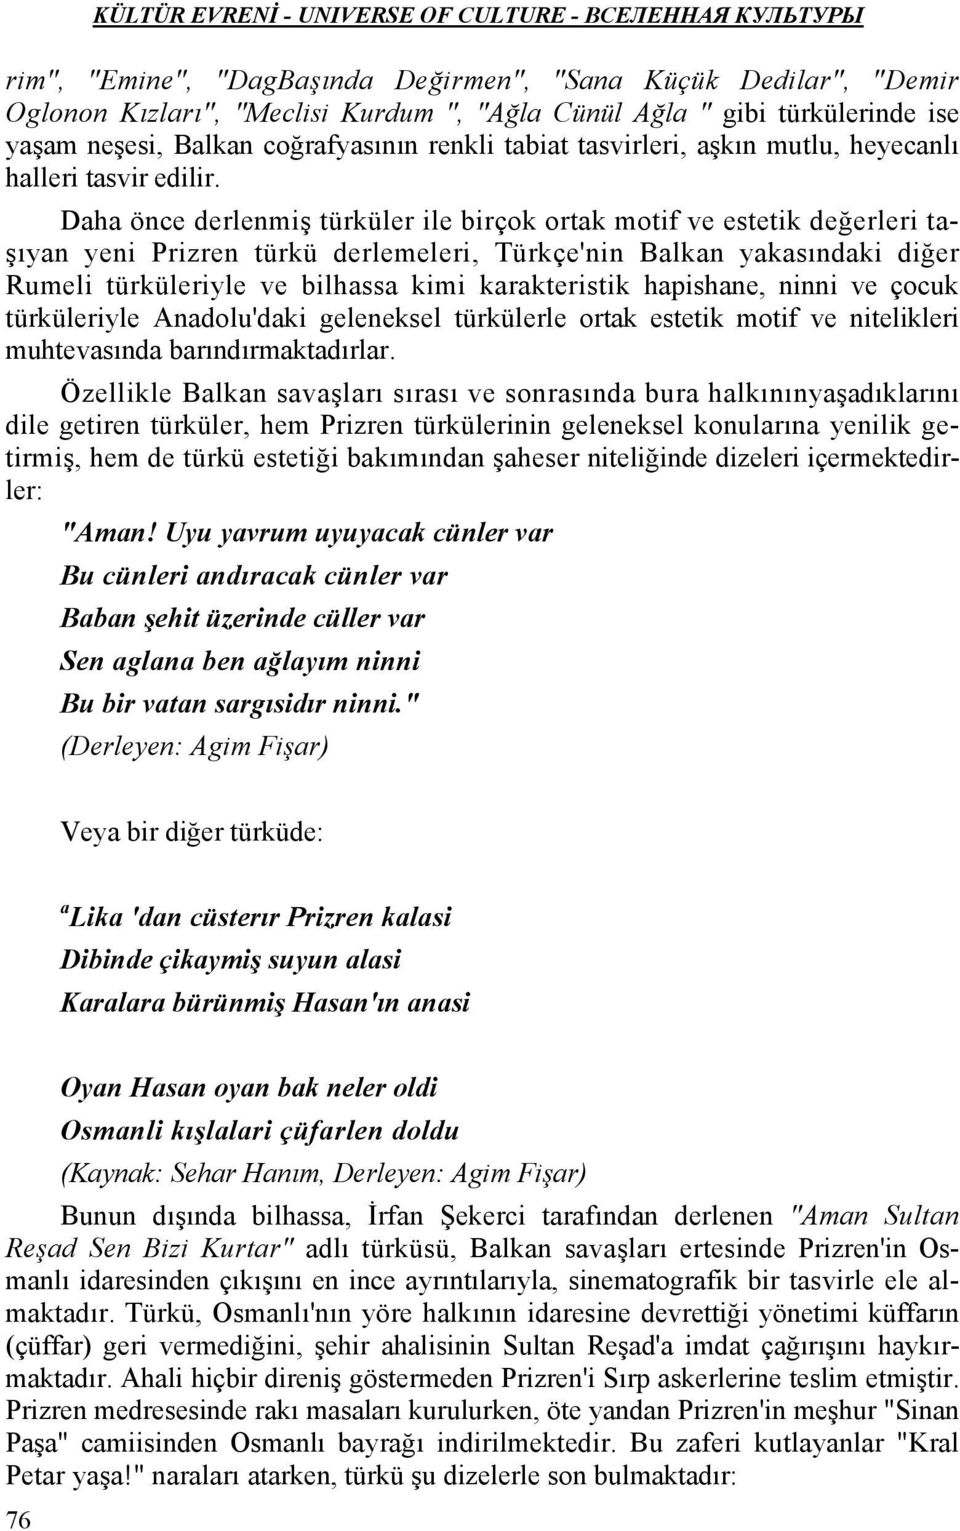 Daha önce derlenmiş türküler ile birçok ortak motif ve estetik değerleri taşıyan yeni Prizren türkü derlemeleri, Türkçe'nin Balkan yakasındaki diğer Rumeli türküleriyle ve bilhassa kimi karakteristik